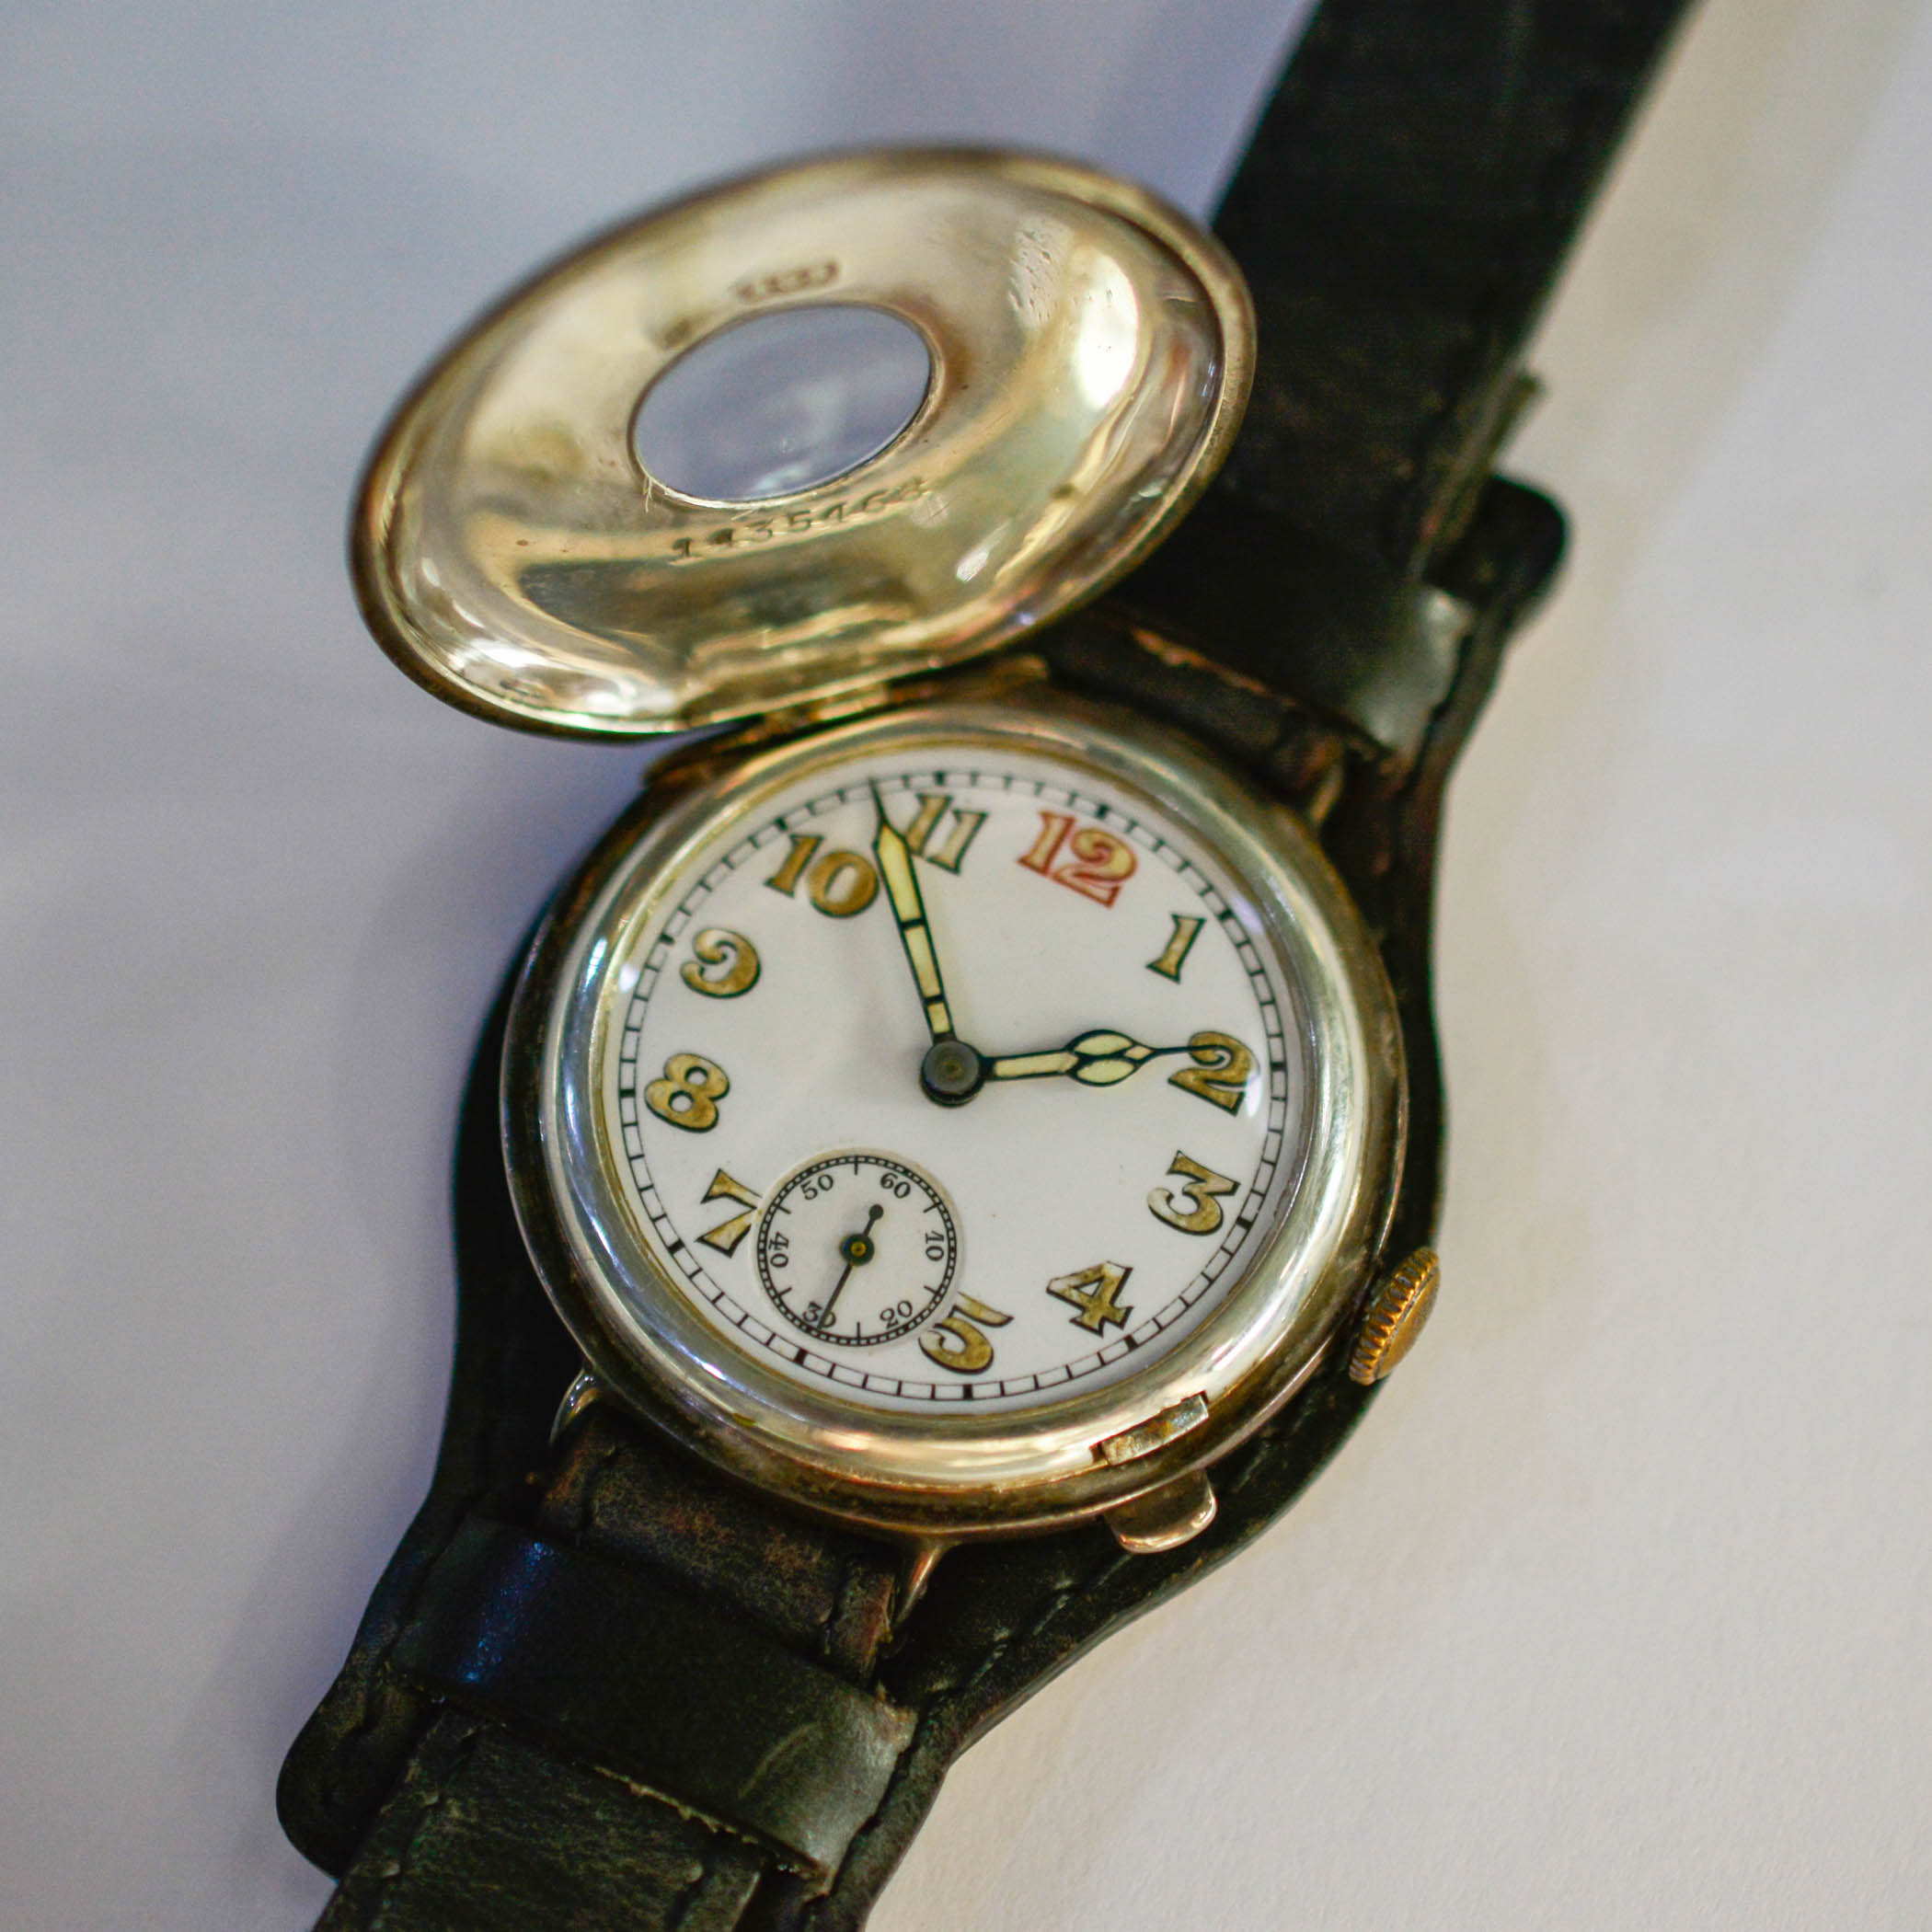 World War 1 era wristwatch with half-hunter case